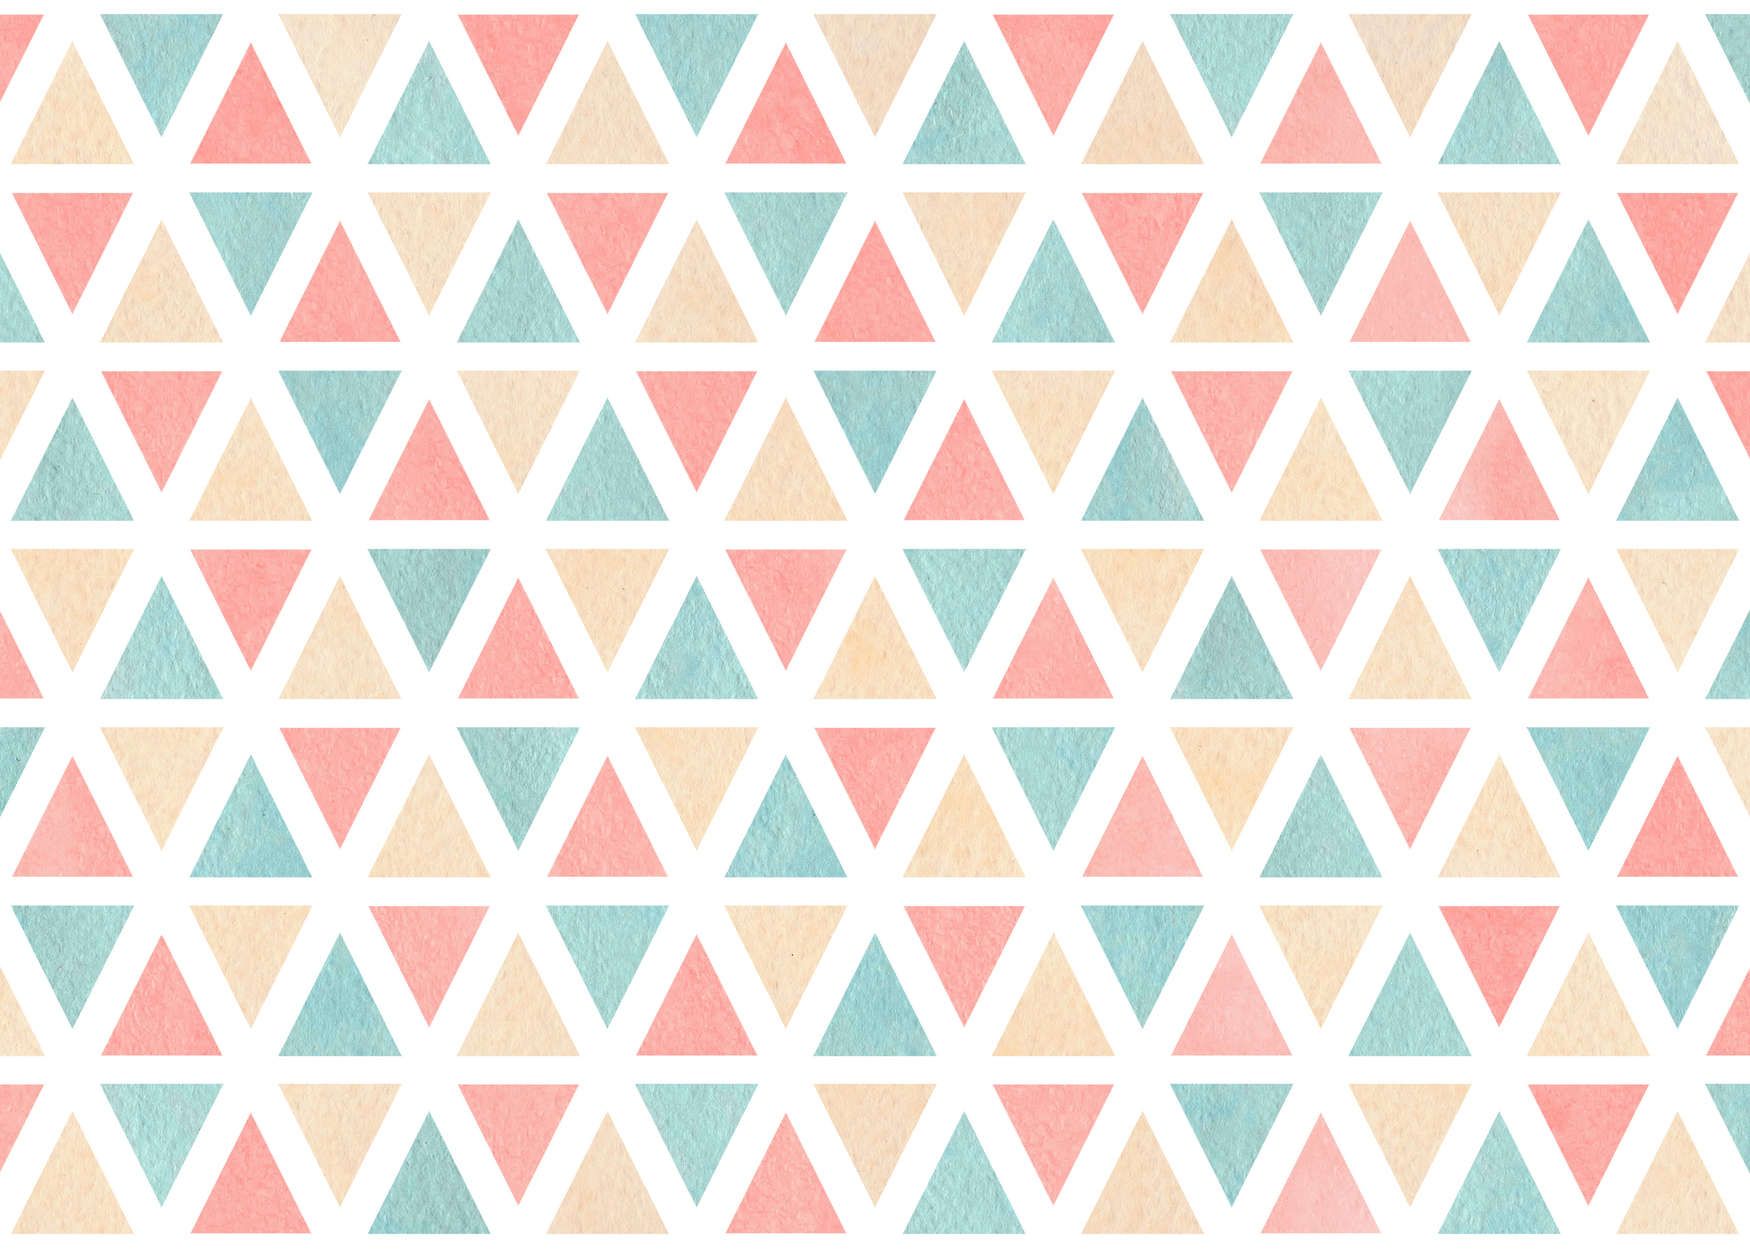             Digital behang grafisch patroon met kleurrijke driehoeken - structuurvlies
        